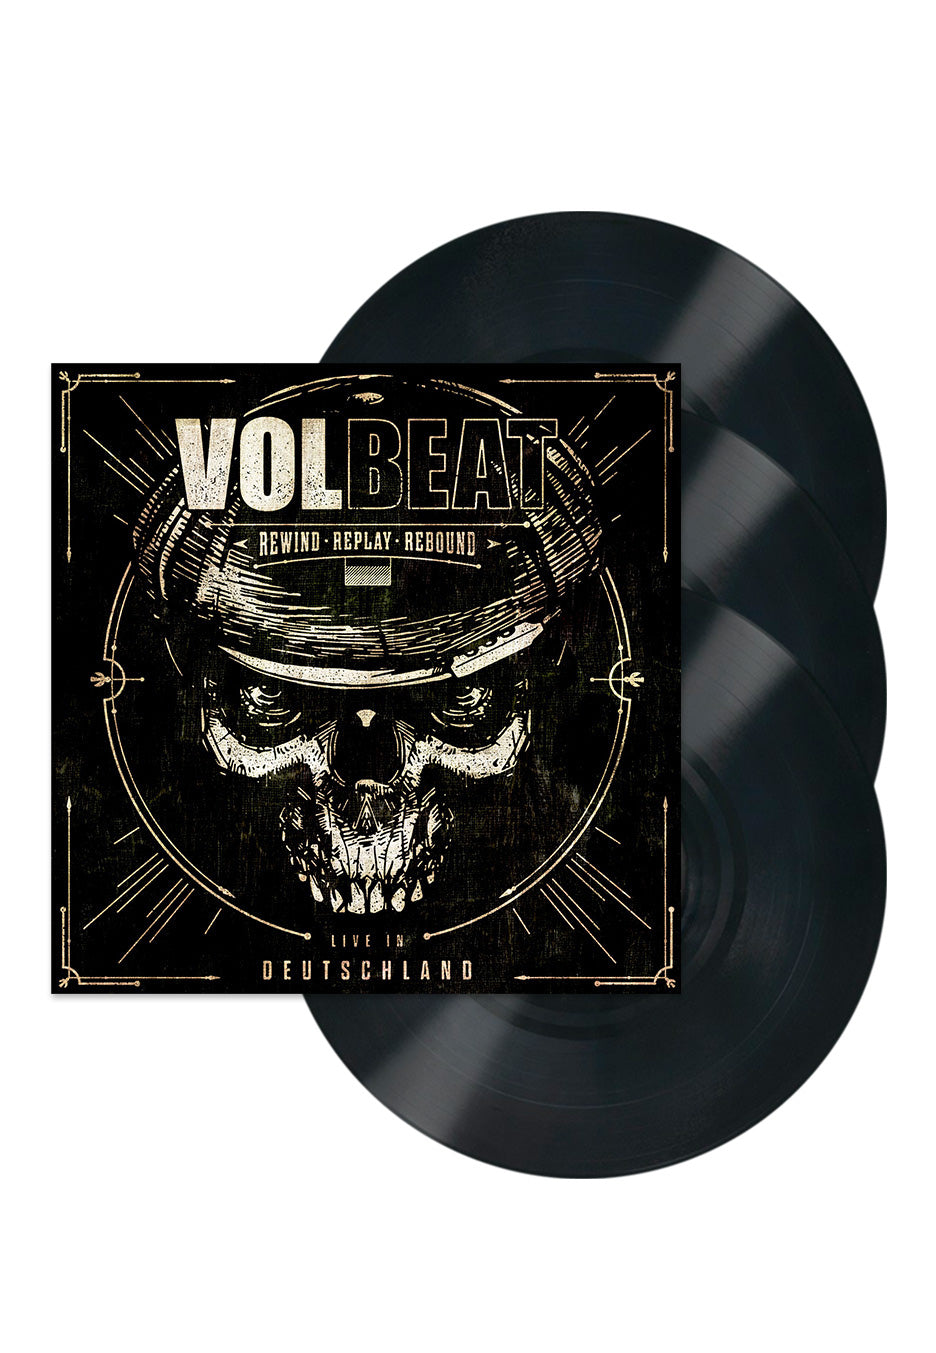 Volbeat - Rewind, Replay, Rebound; Live in Deutschland - 3 Vinyl